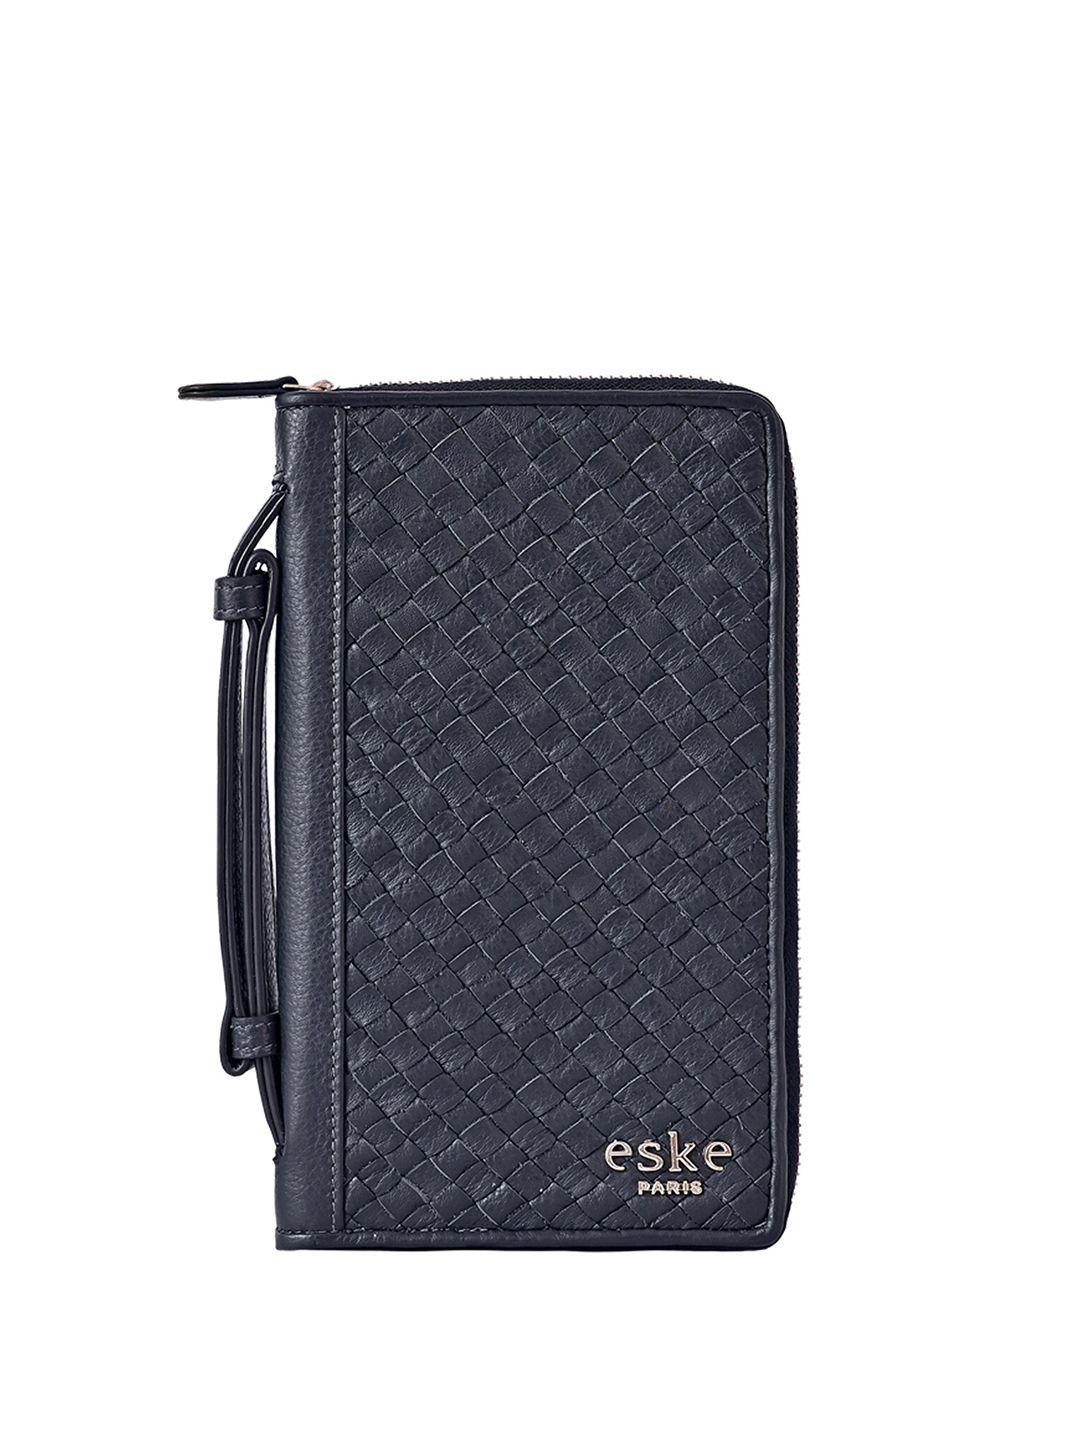 eske textured woven design leather passport holder